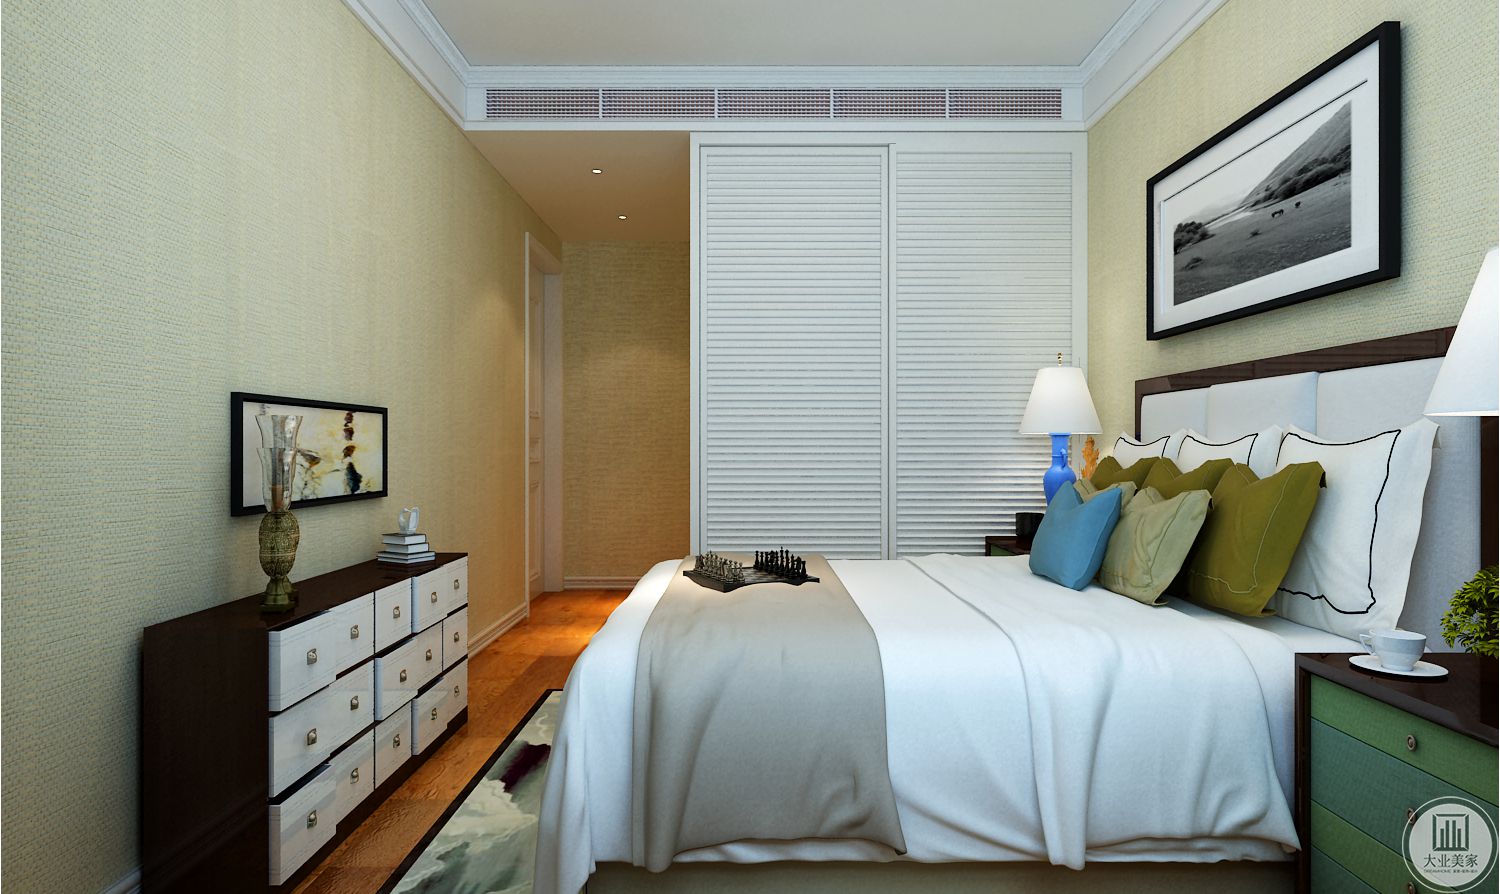 客房装修效果图：床尾的橱柜使用黑色橱柜，橱柜上使用景物画装饰。